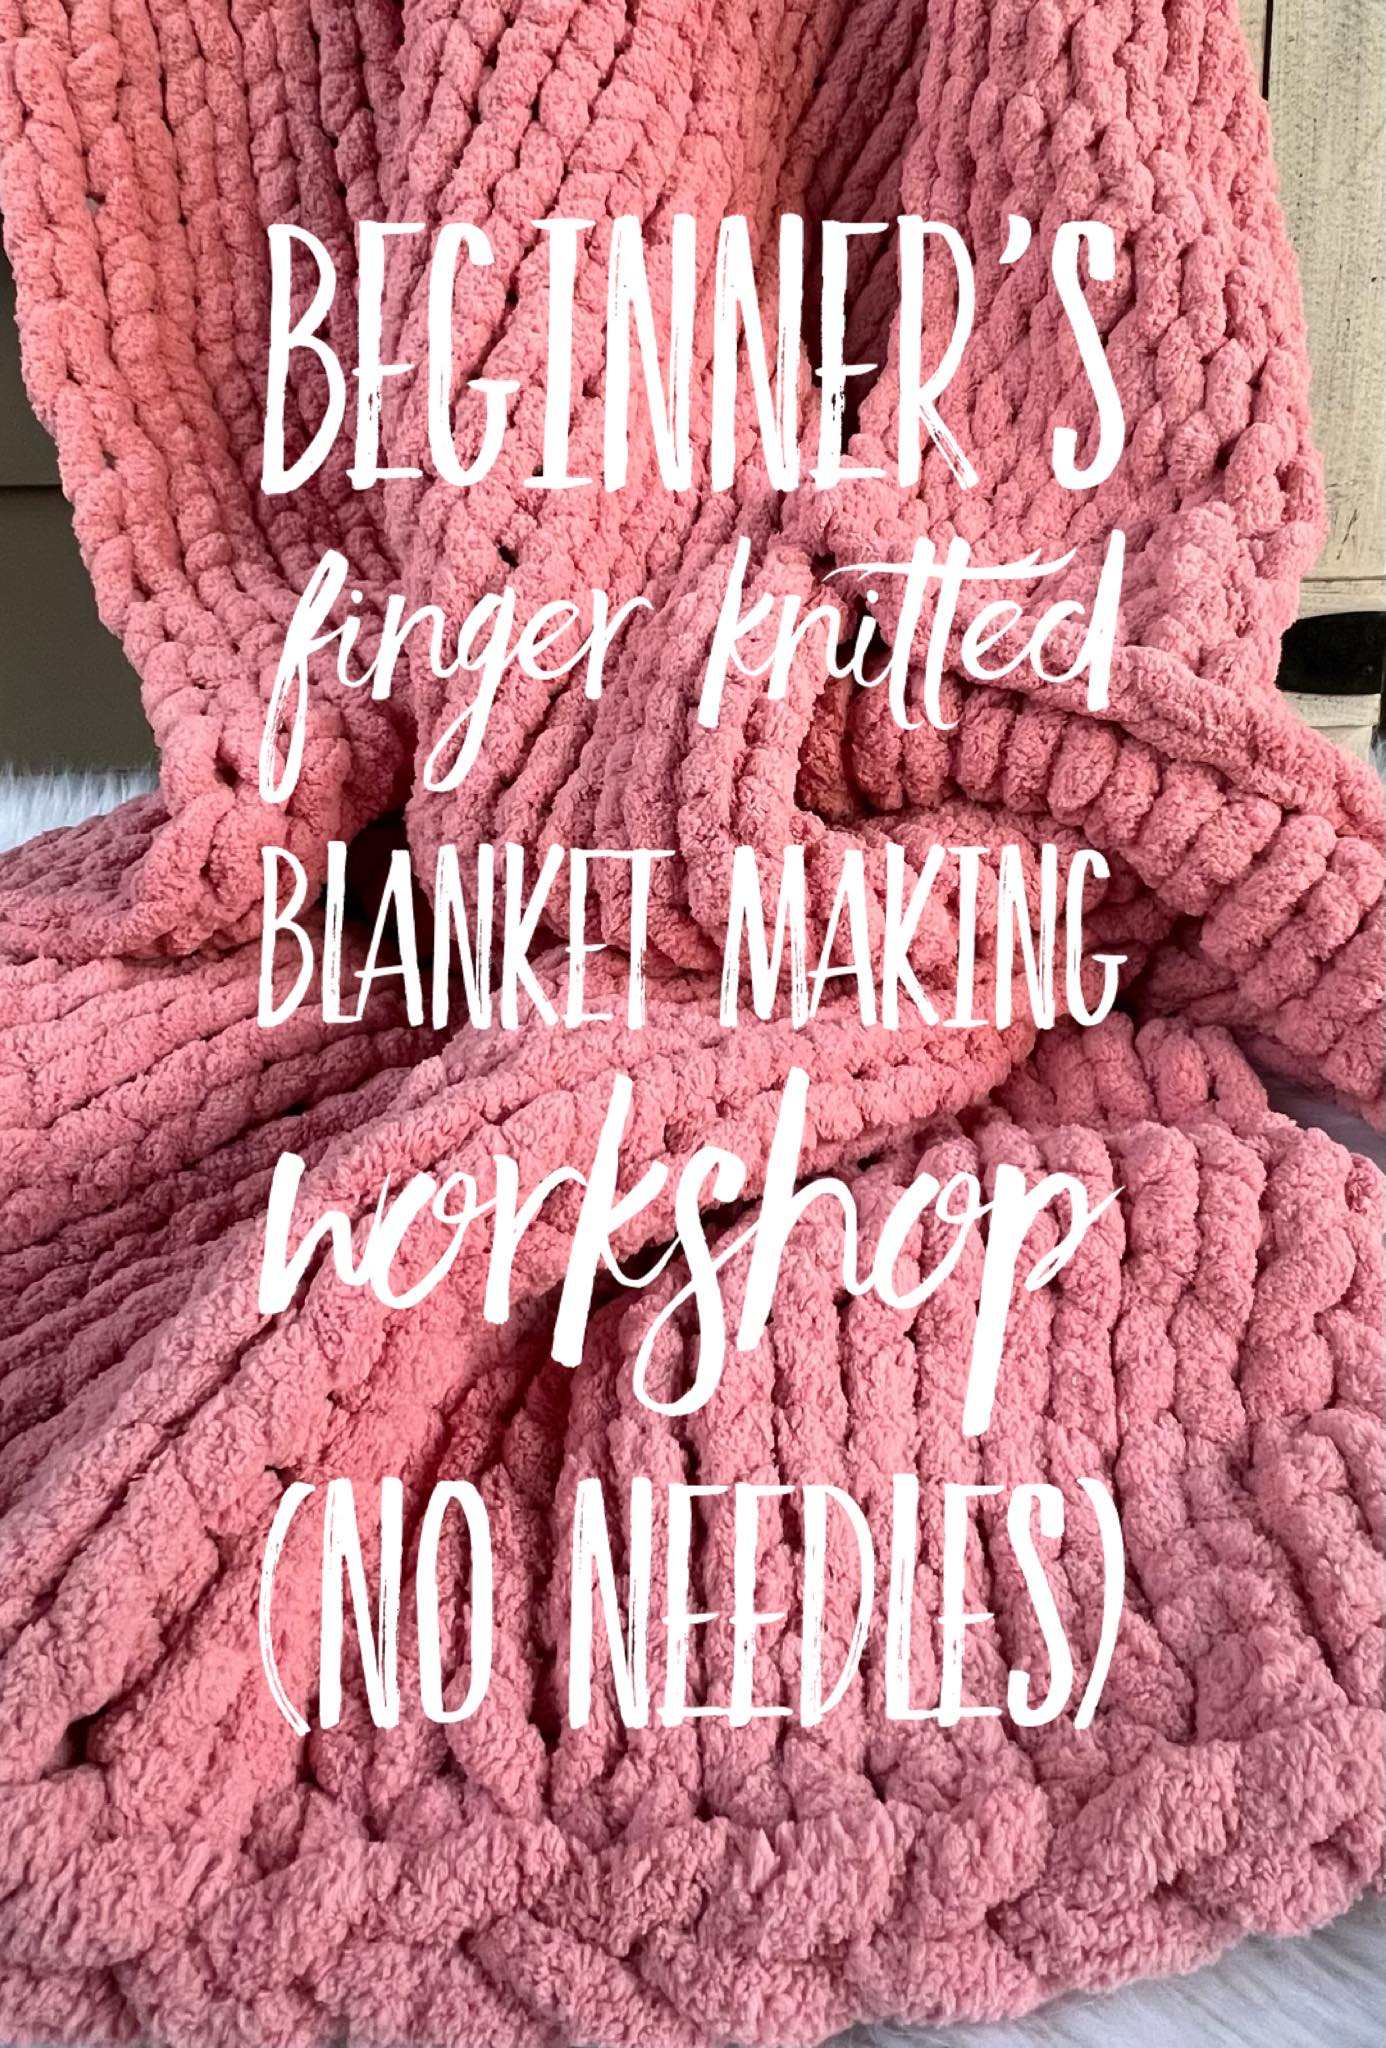 Beginner’s chunky yarn finger knitted blanket workshop 01/07 5pm